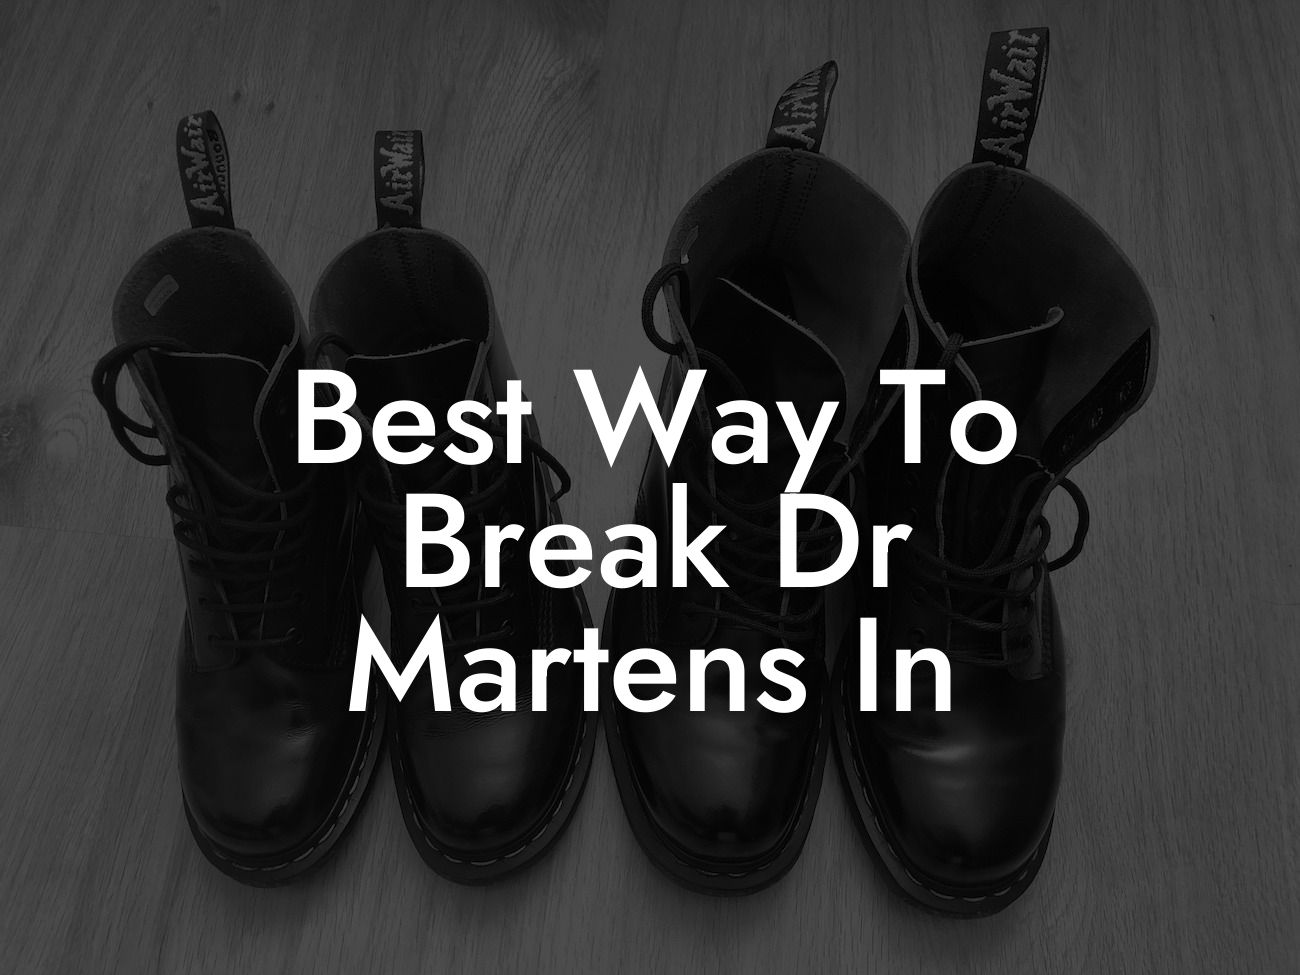 Best Way To Break Dr Martens In